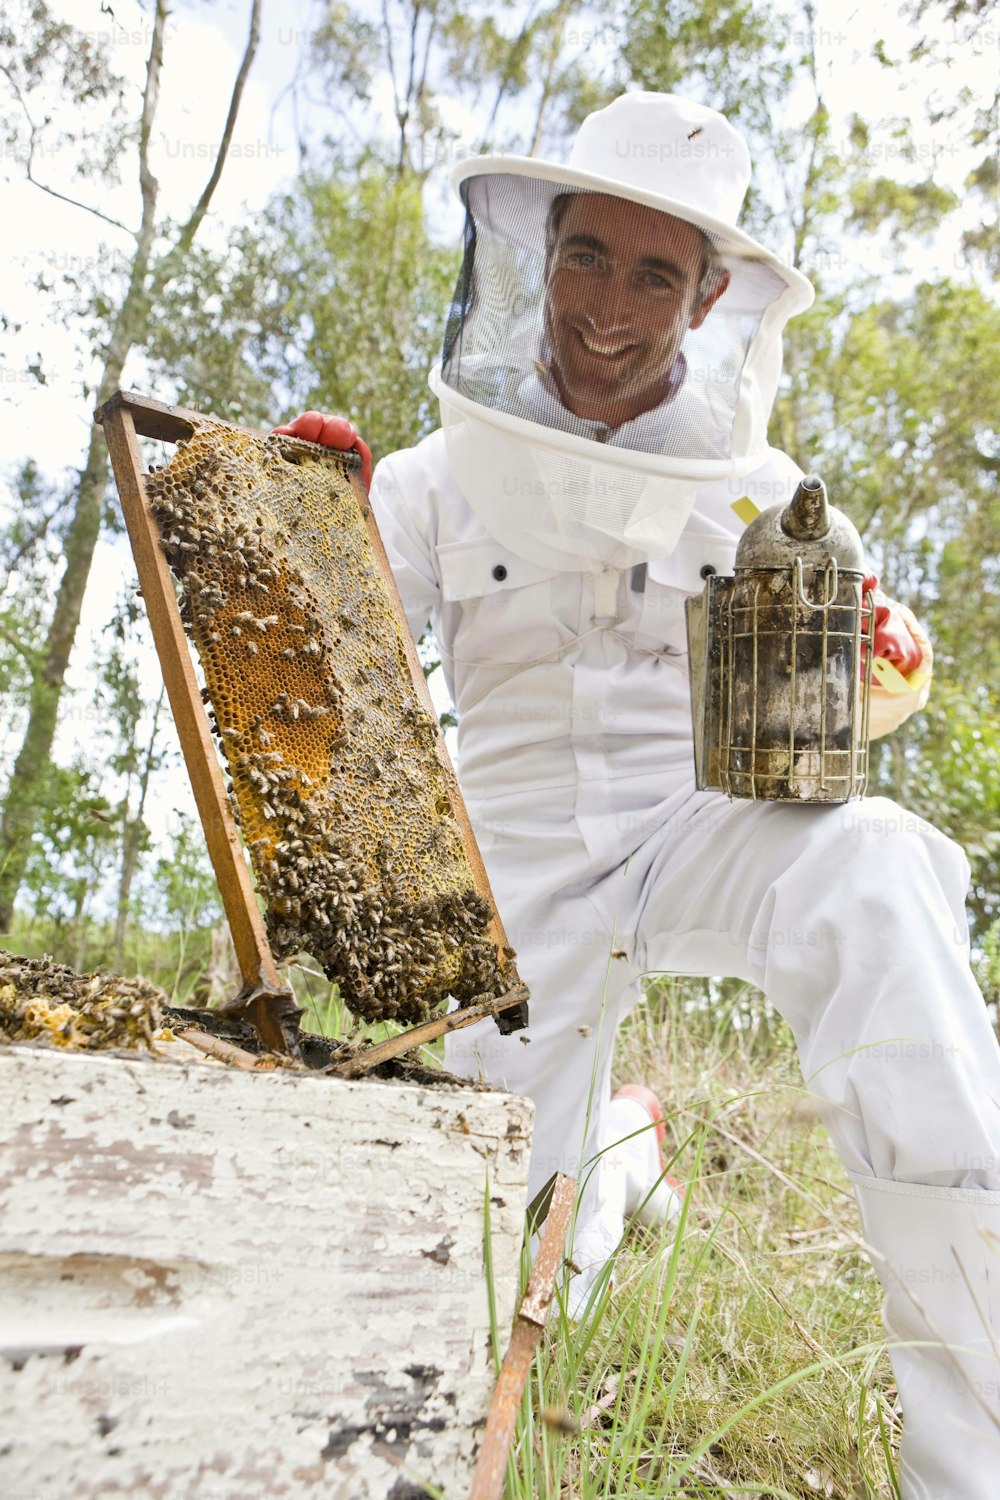 Ein Mann in einem Bienenanzug, der einen Bienenstock hält